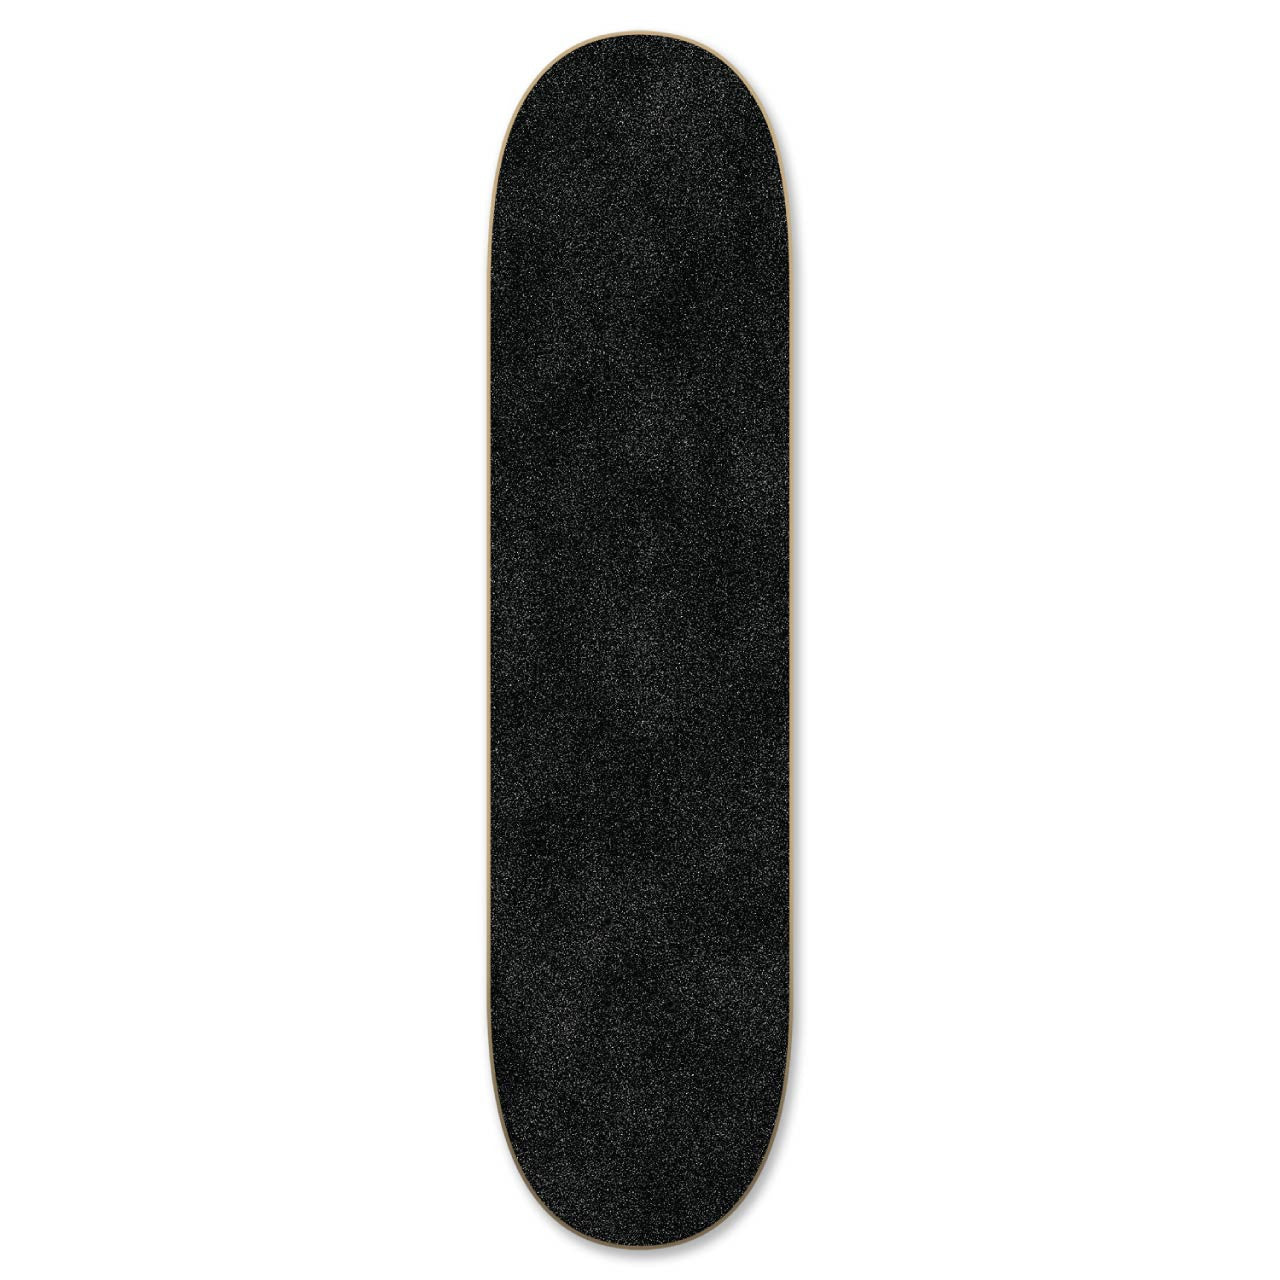 Graphic Skateboard  Deck - Bandana SkyBlue